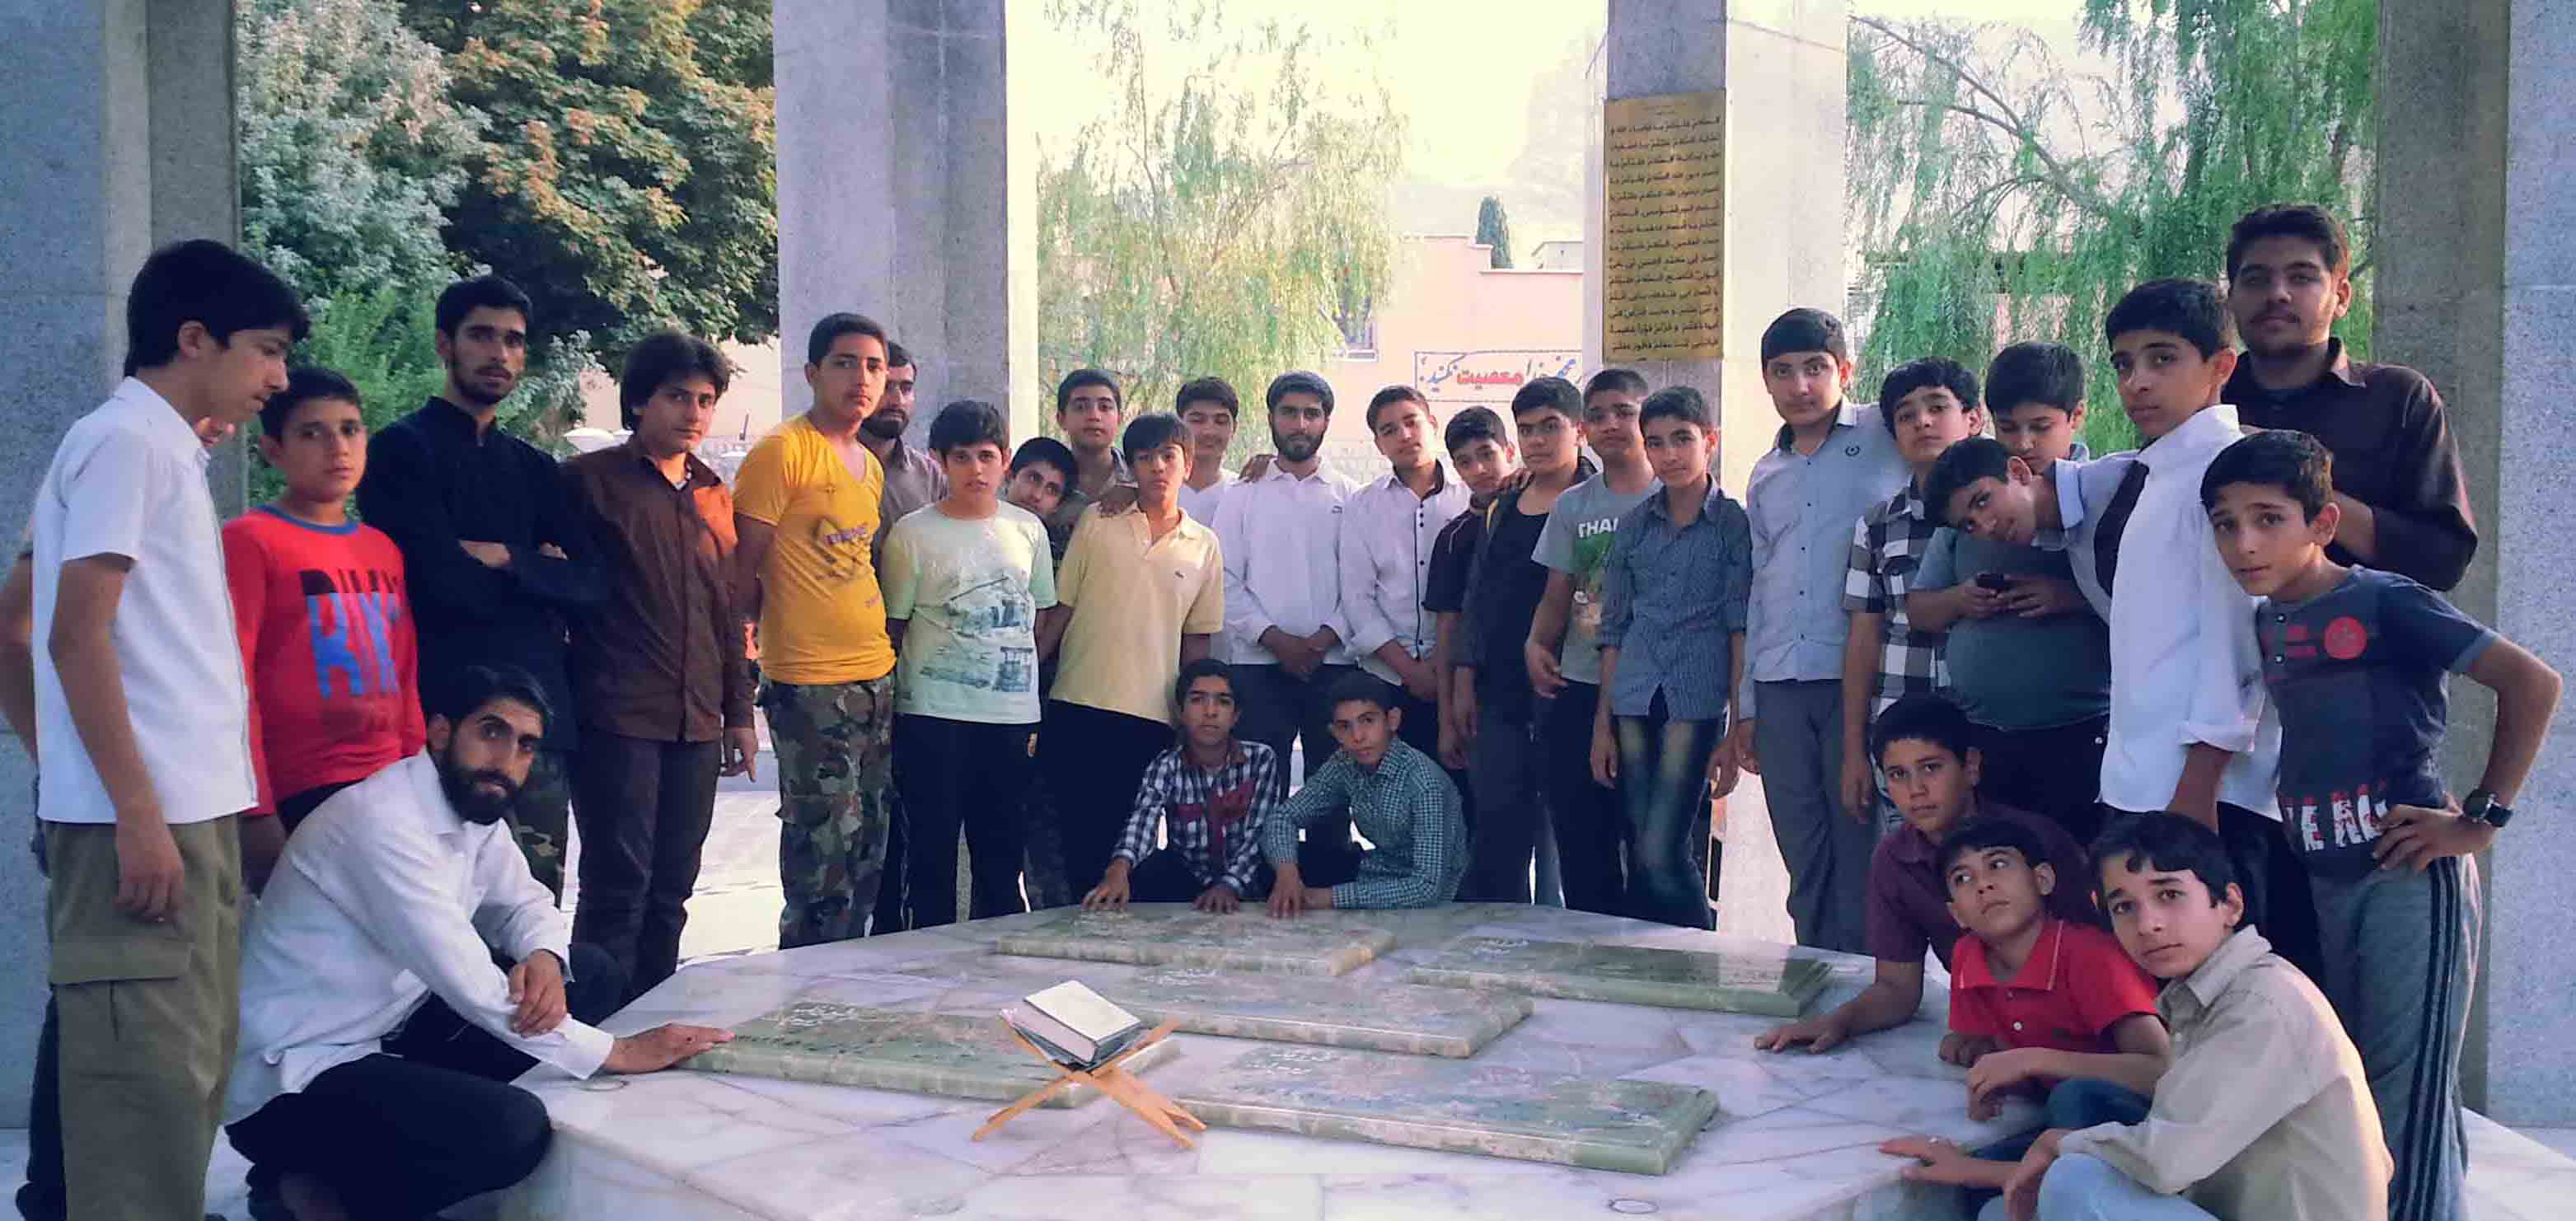 اردوی 2 روزه مقطع راهنمایی به مقصد استهبان - تابستان 93